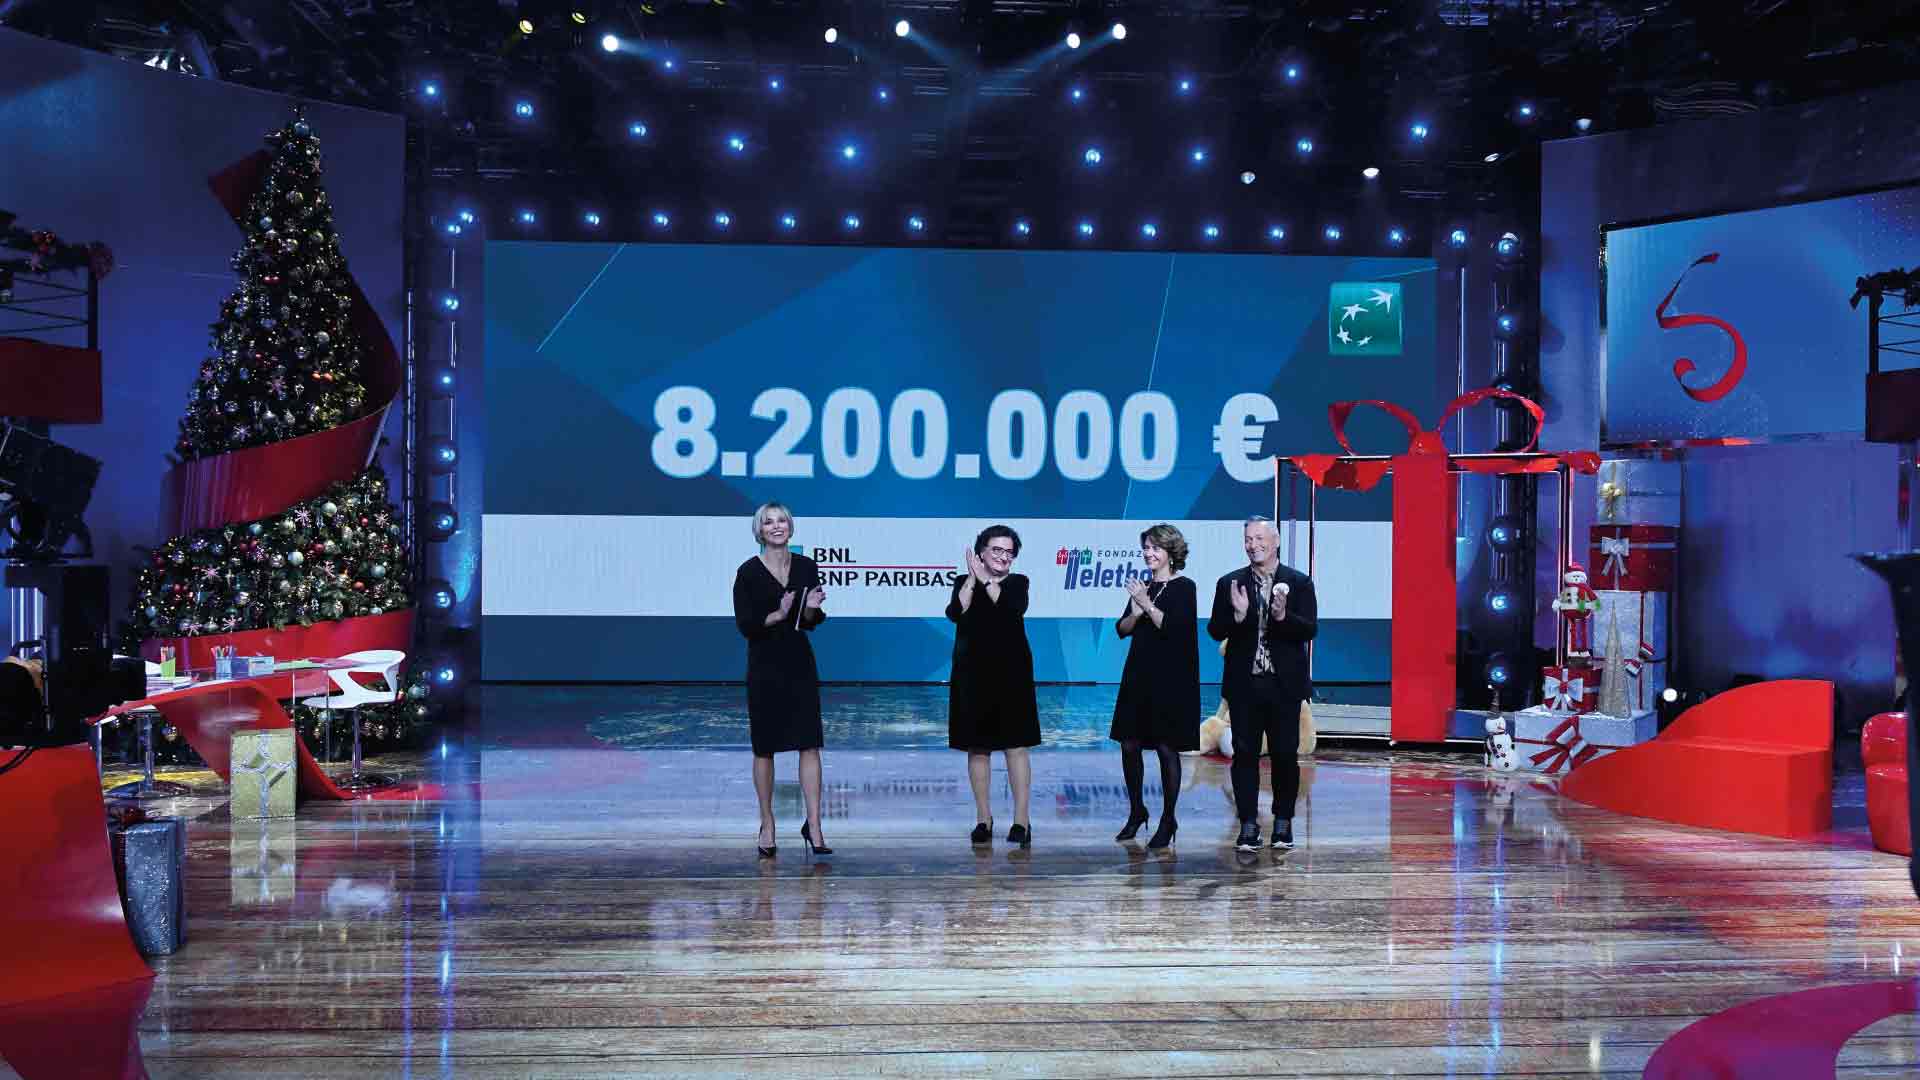 Scatto fotografico del momento in cui durante la maratona televisiva viene consegnato l'assegno di 8.200.000 euro